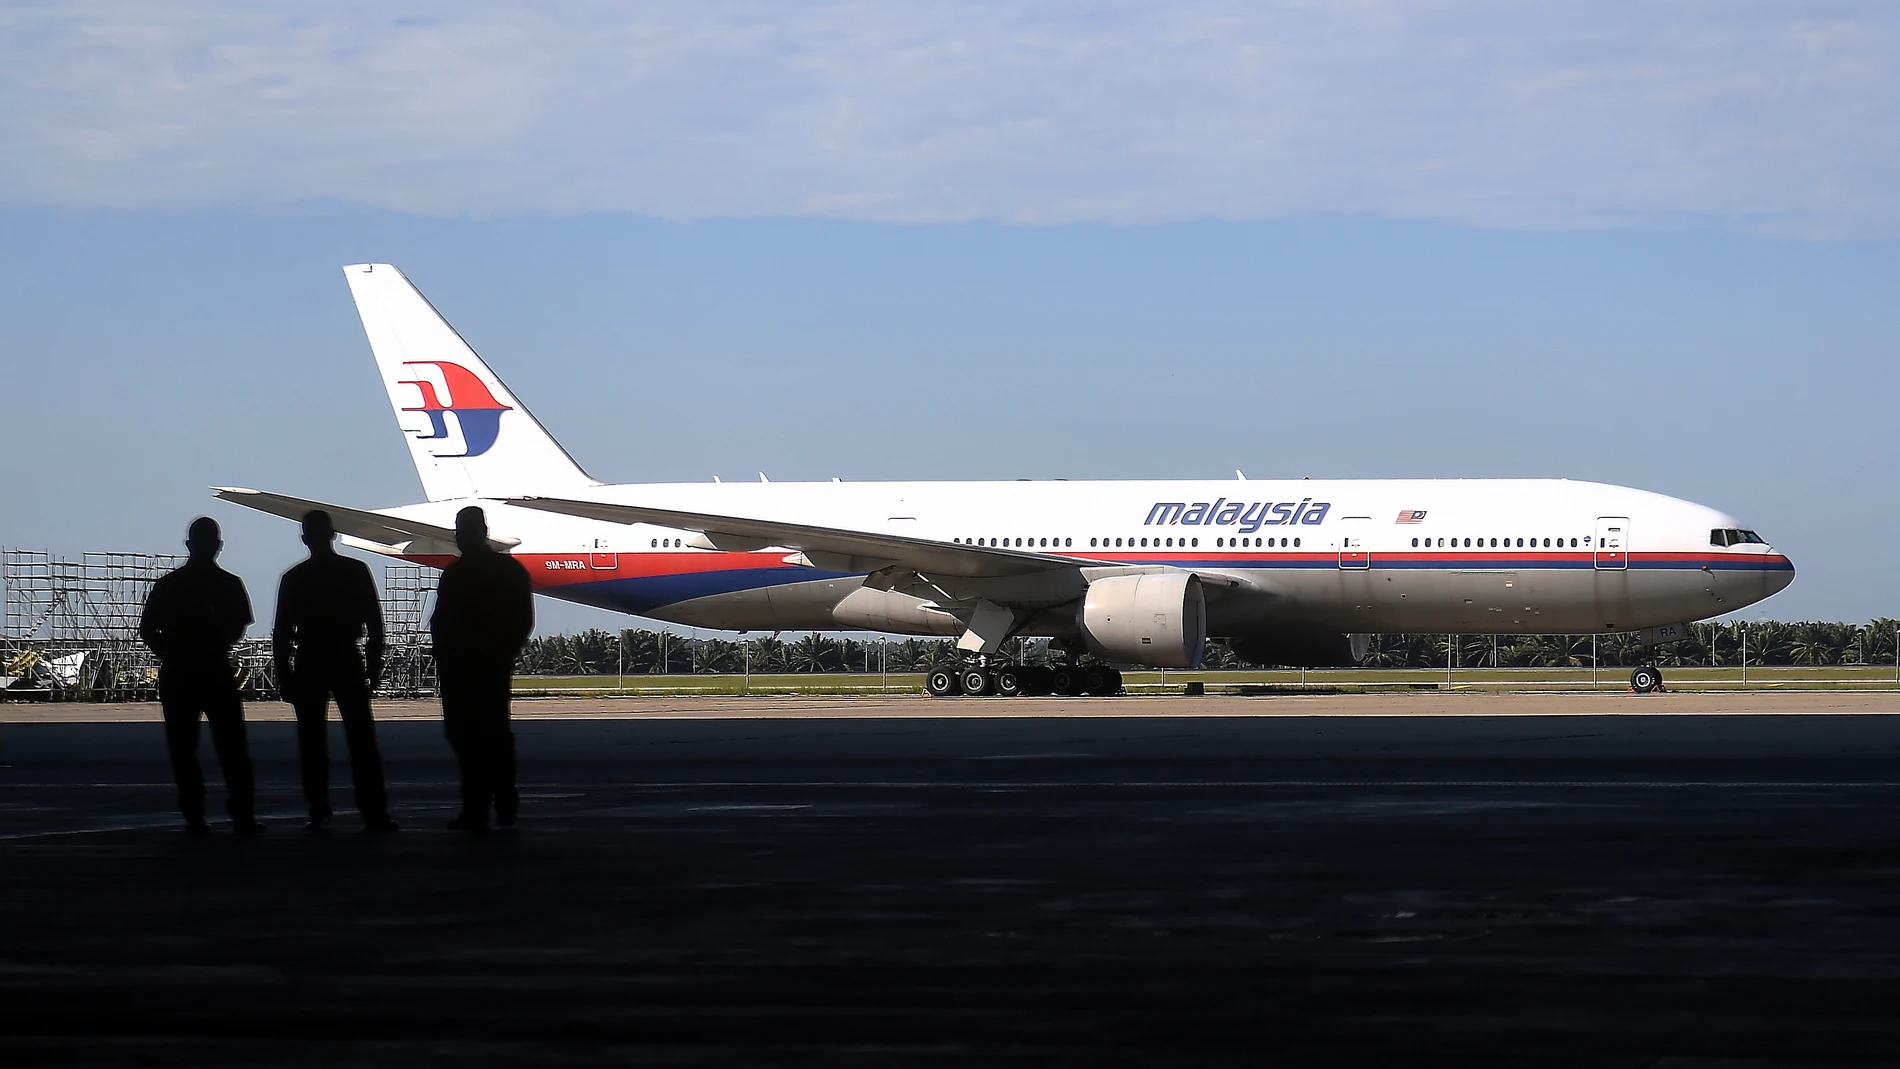 Qué pasó con el MH370, el avión de Malaysia Airlines que desapareció y del que nunca se supo más